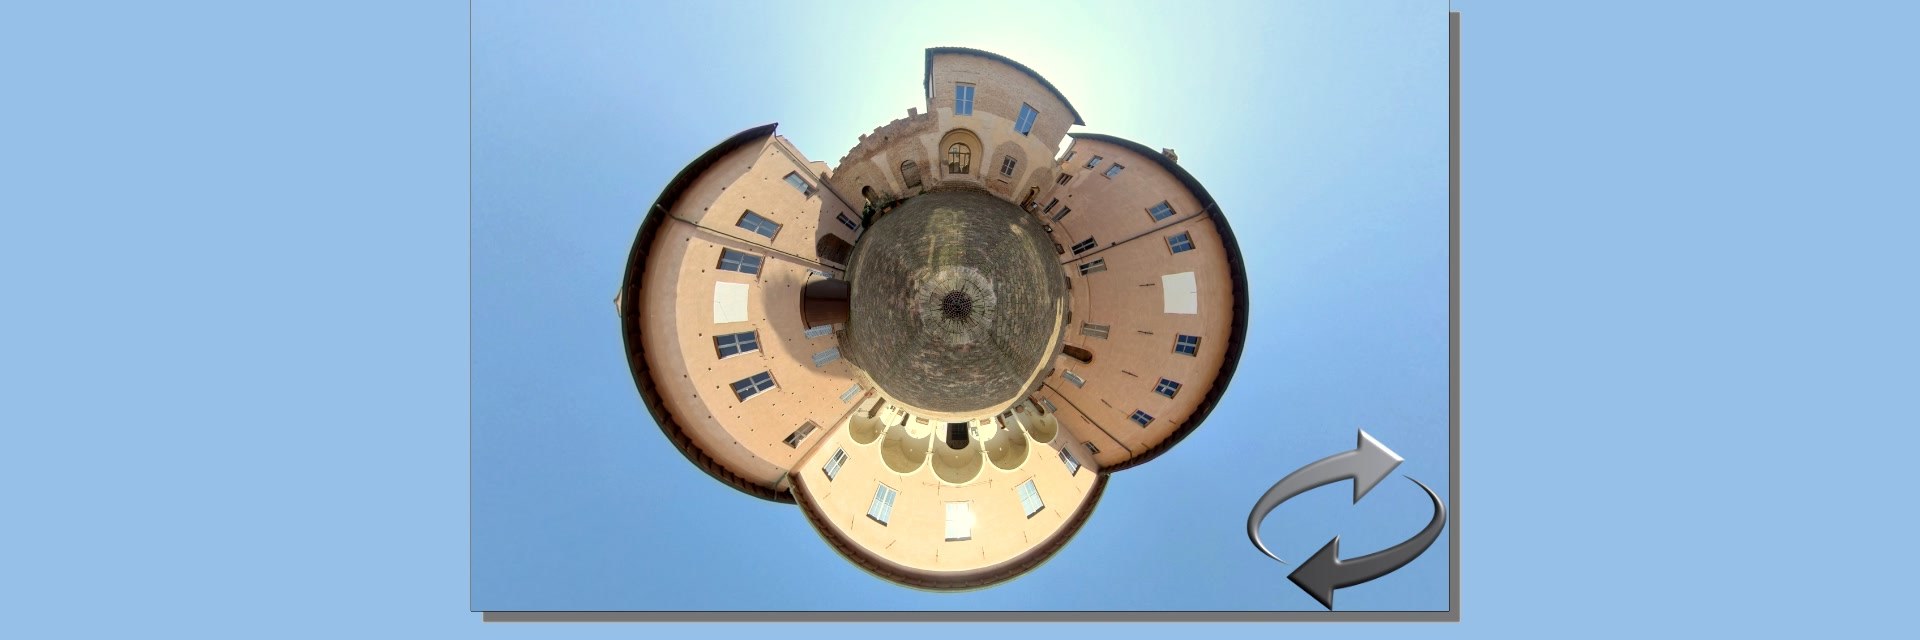 Virtual Tour of Spezzano Castle